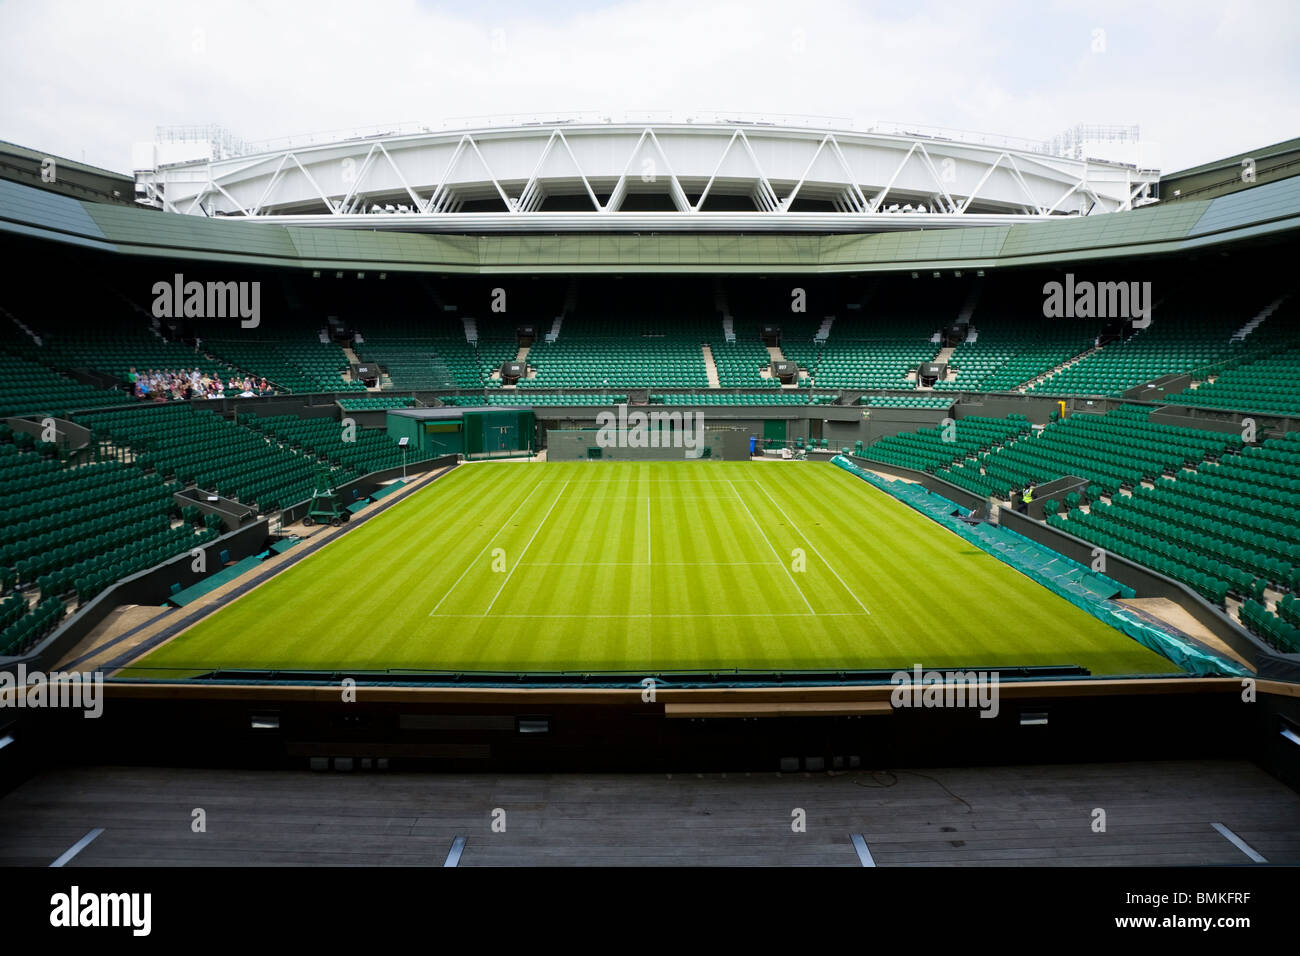 Photographie de centre Court Wimbledon / championnat de tennis stade Arena avec le toit escamotable. Wimbledon, Royaume-Uni. Banque D'Images